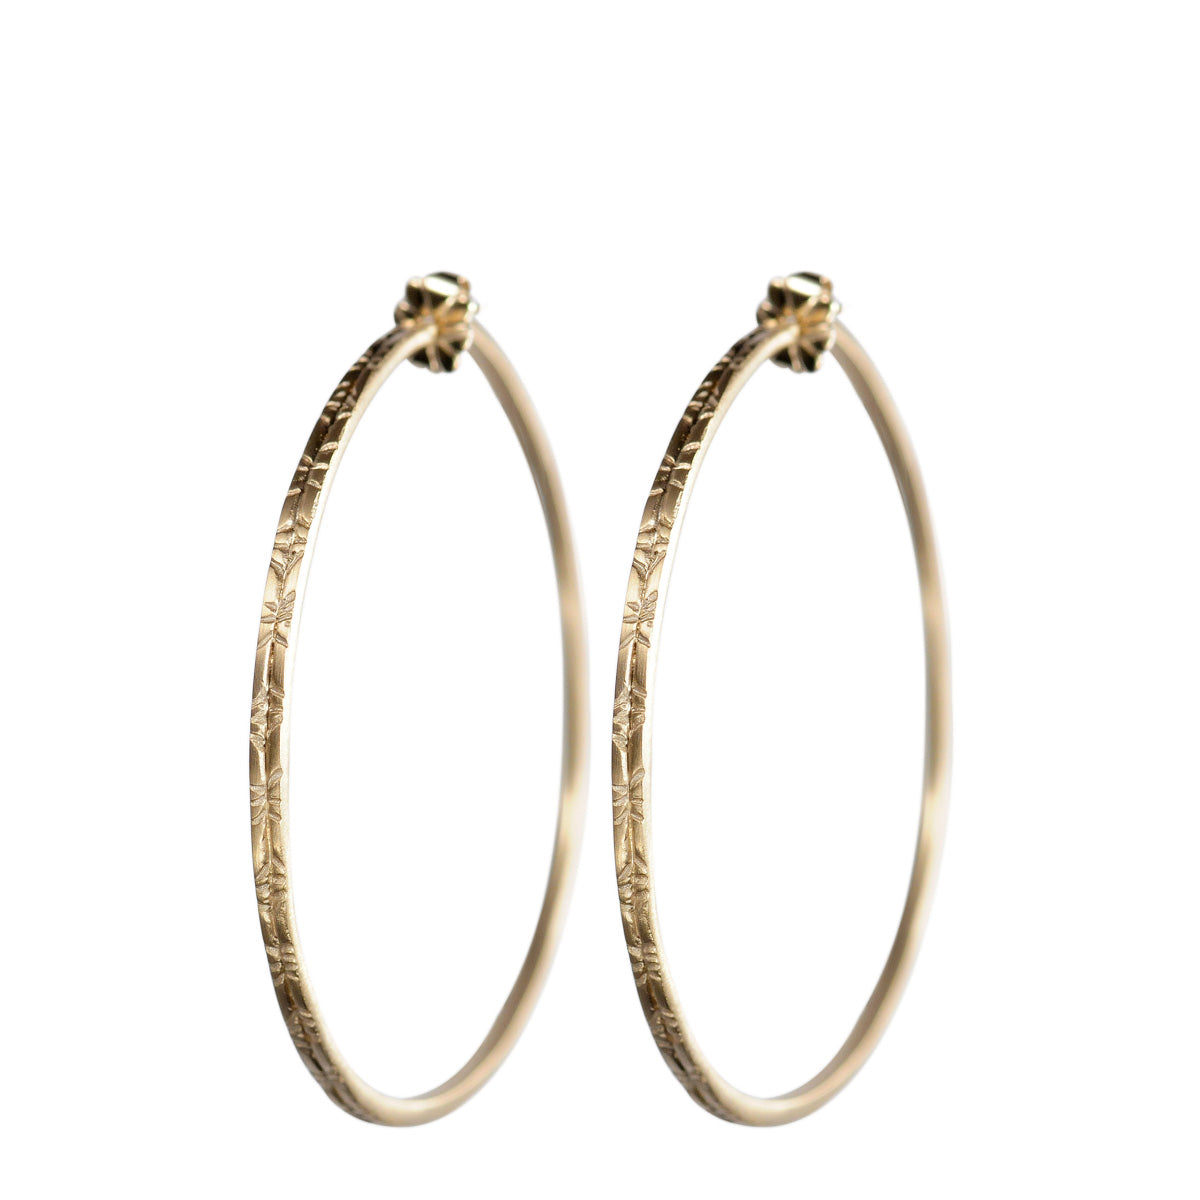 10K Gold Large Engraved Endless Hoop Earrings